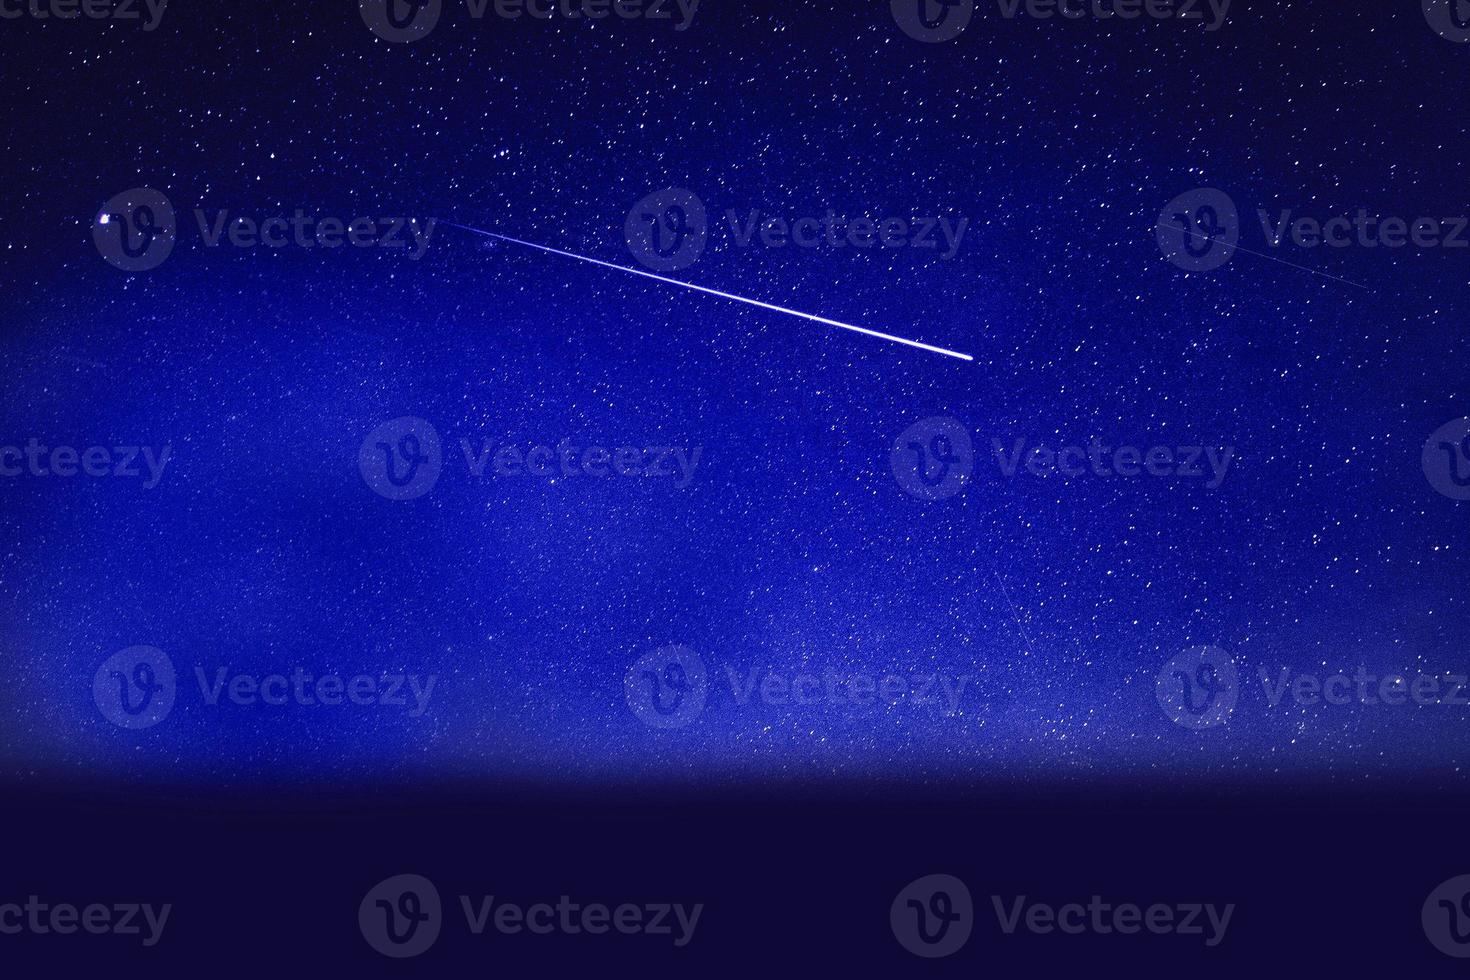 panorama notturno della galassia drammatico blu chiaro dallo spazio dell'universo lunare sul cielo notturno foto